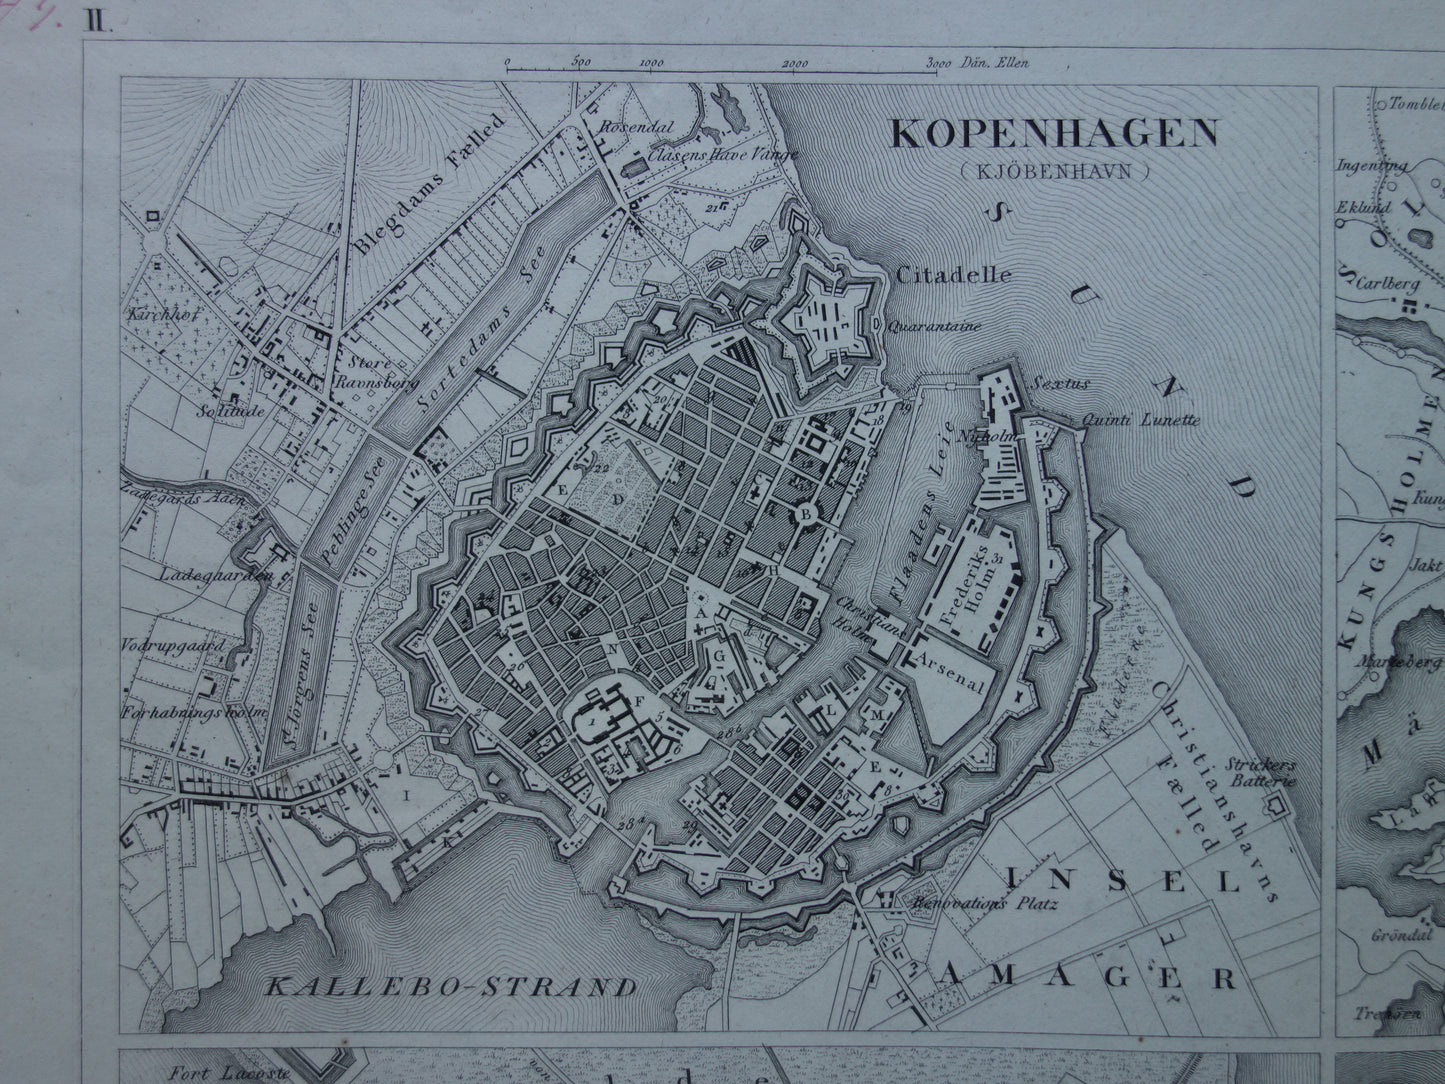 Amsterdam Antwerpen Stockholm Kopenhagen antieke plattegrond 170+ jaar oude kaart met plattegronden van Europese steden uit 1849 - originele vintage historische kaarten